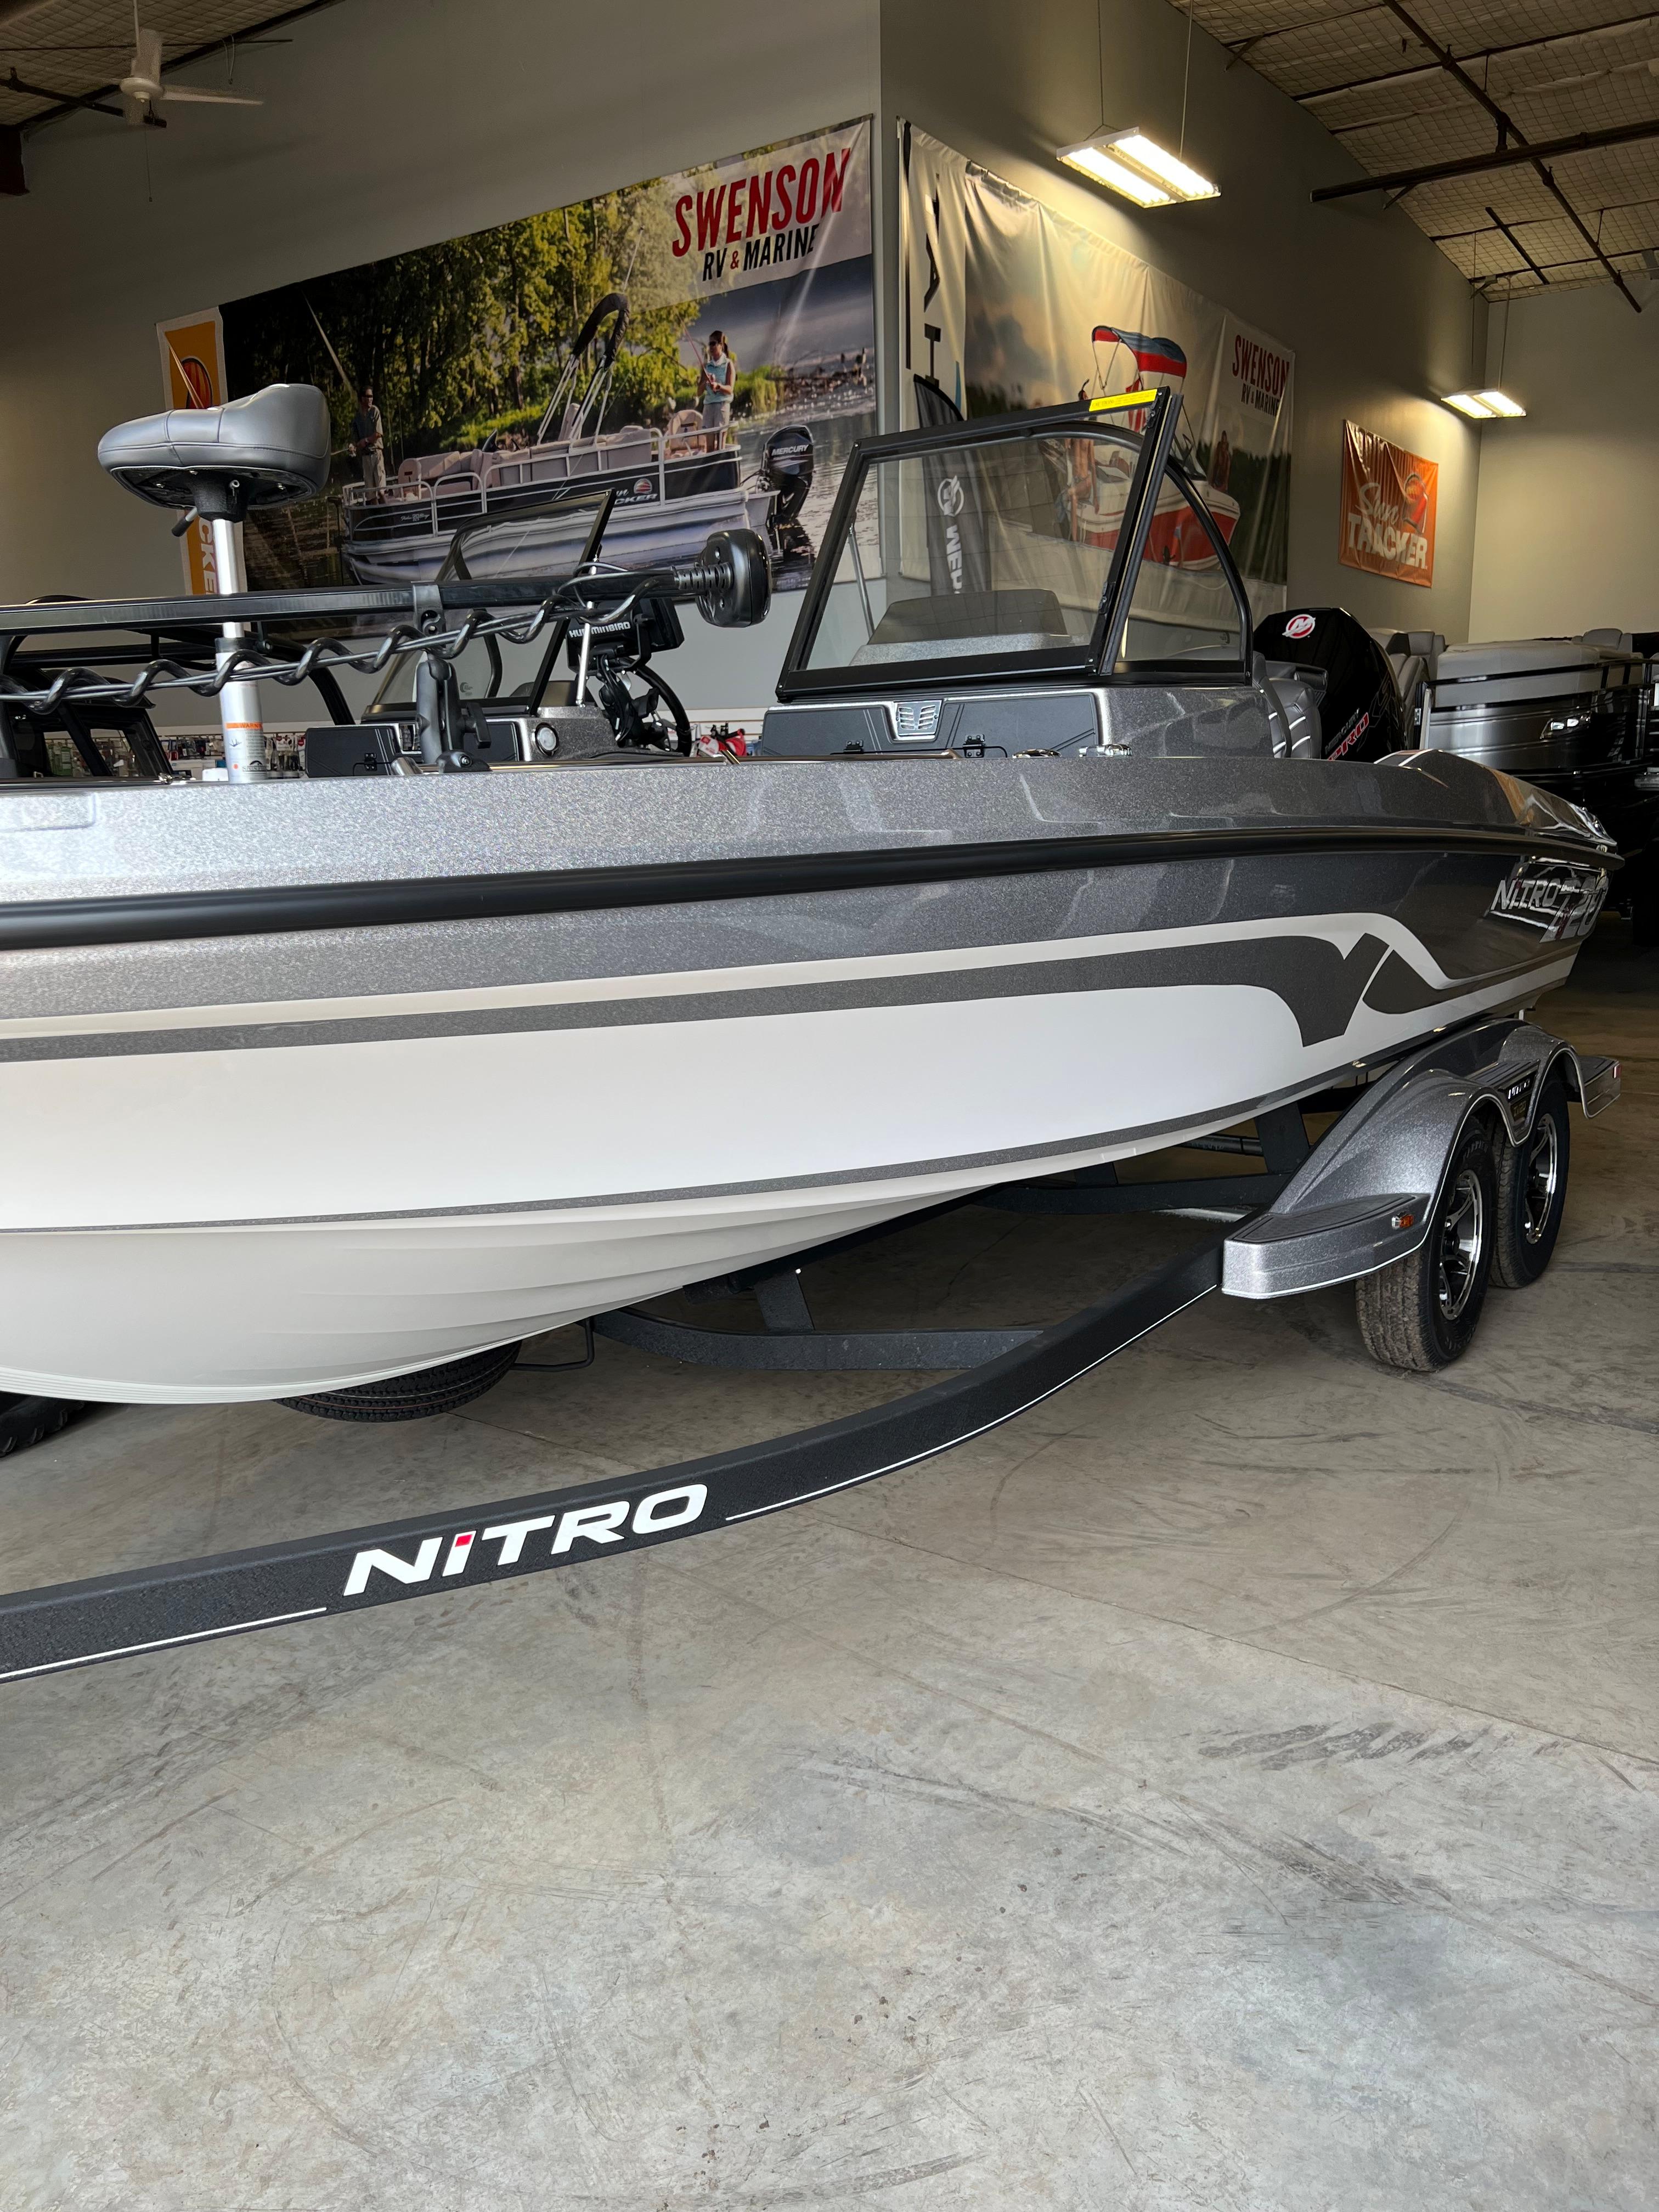 57 Nitro Bass Boat Bench Seats